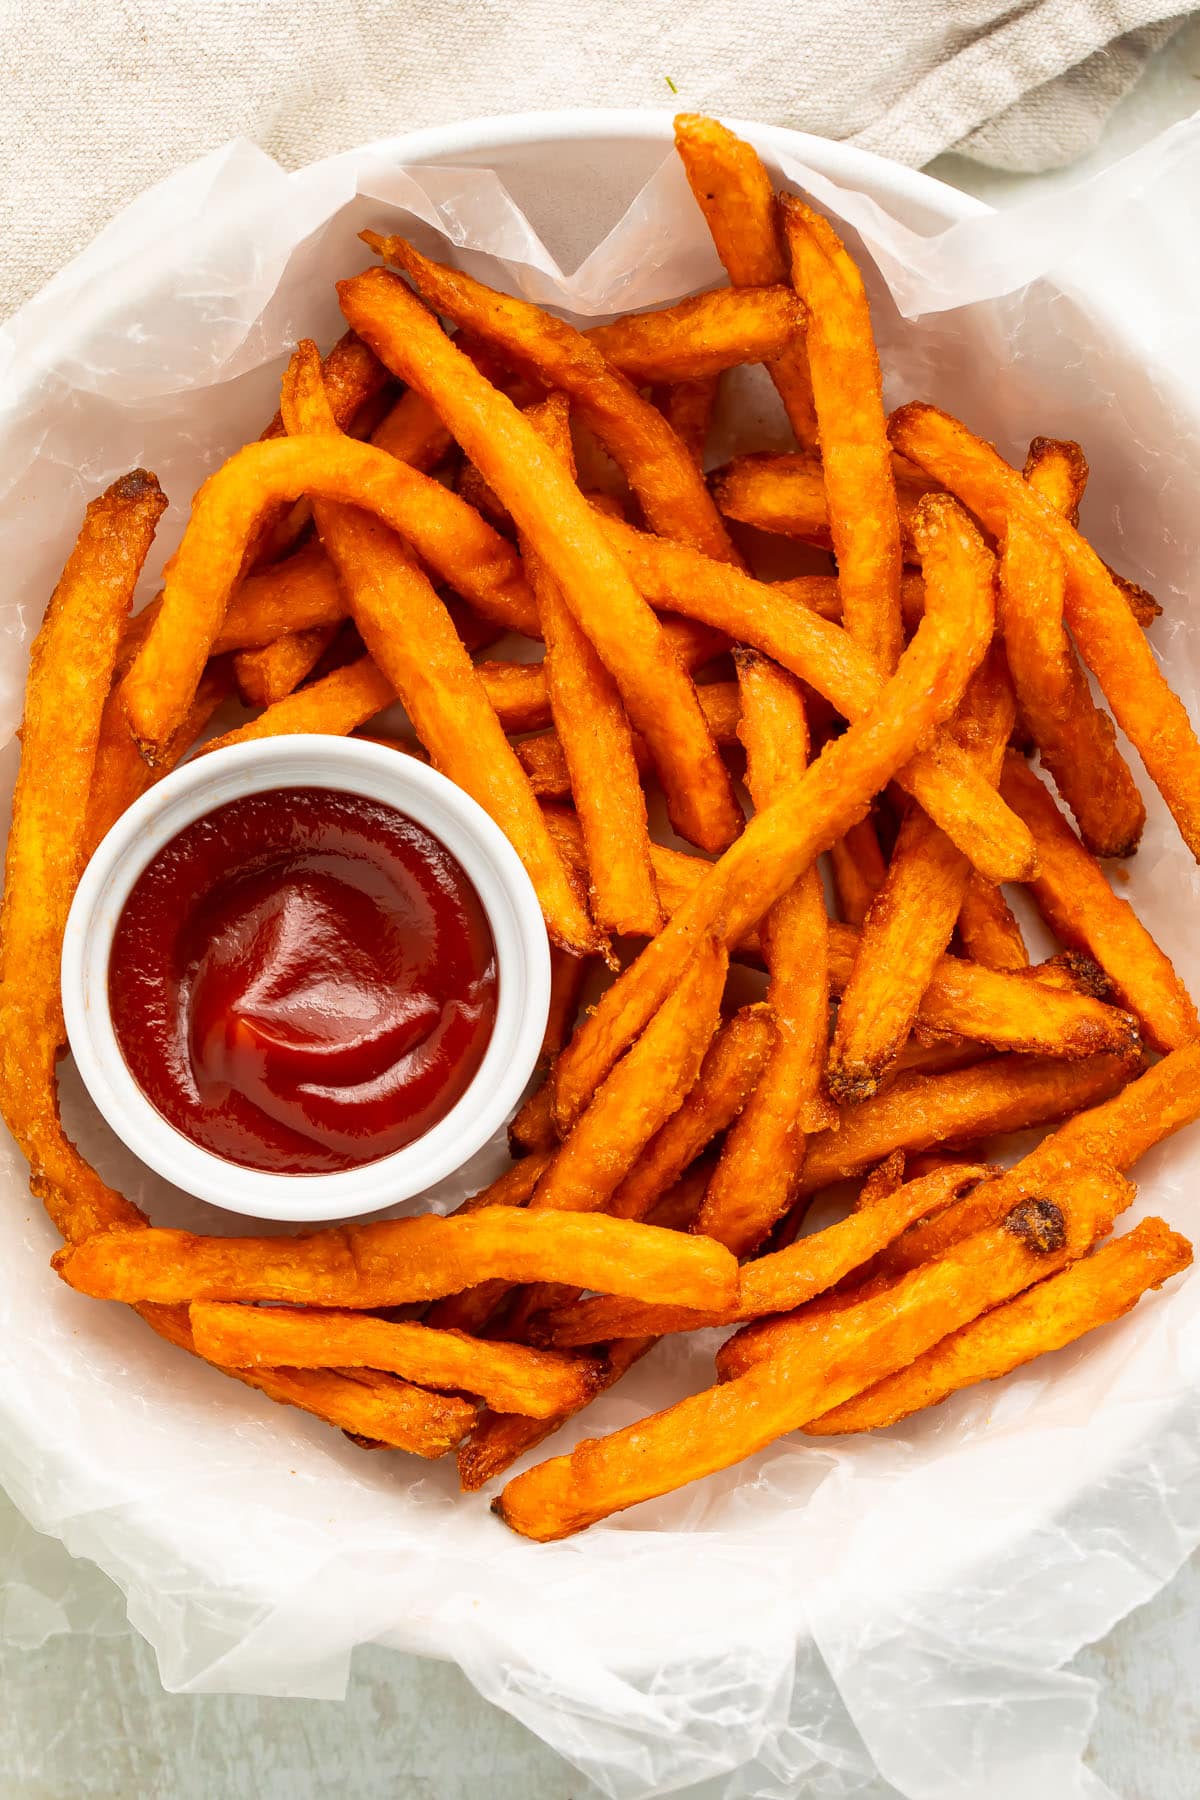 A bowl of air fryer frozen sweet potato fries with a ramekin of ketchup.